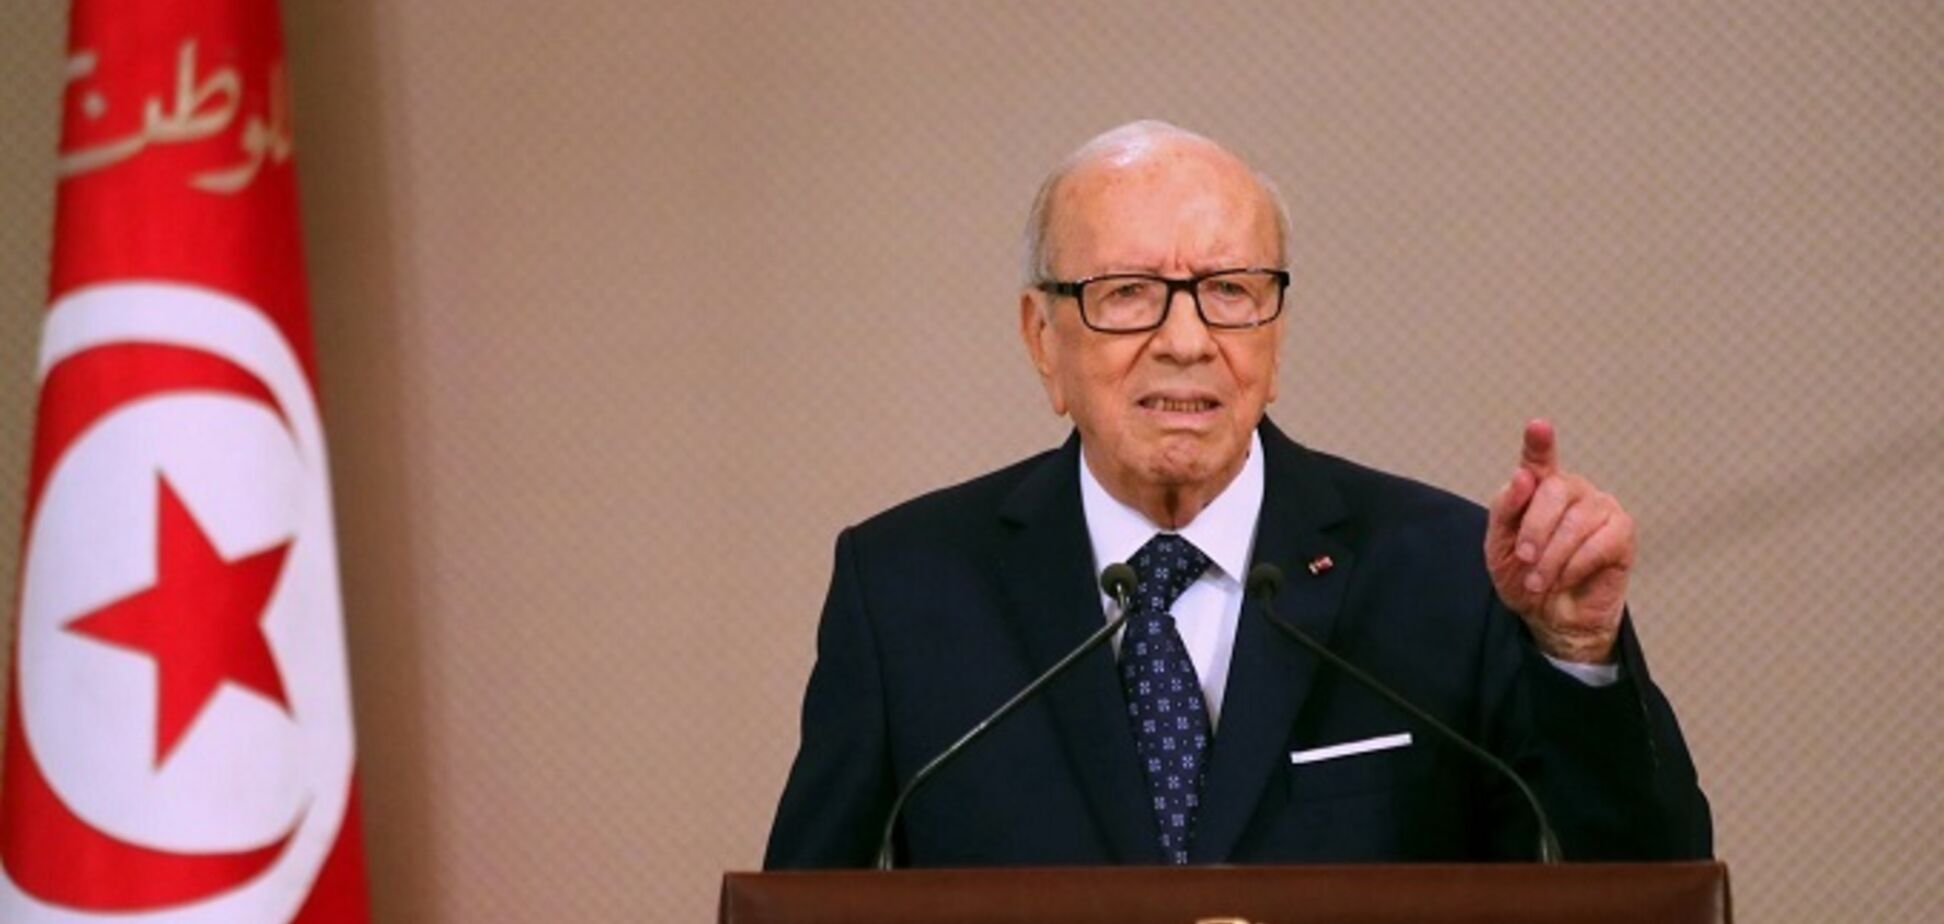 Скончался президент Туниса: чем он известен